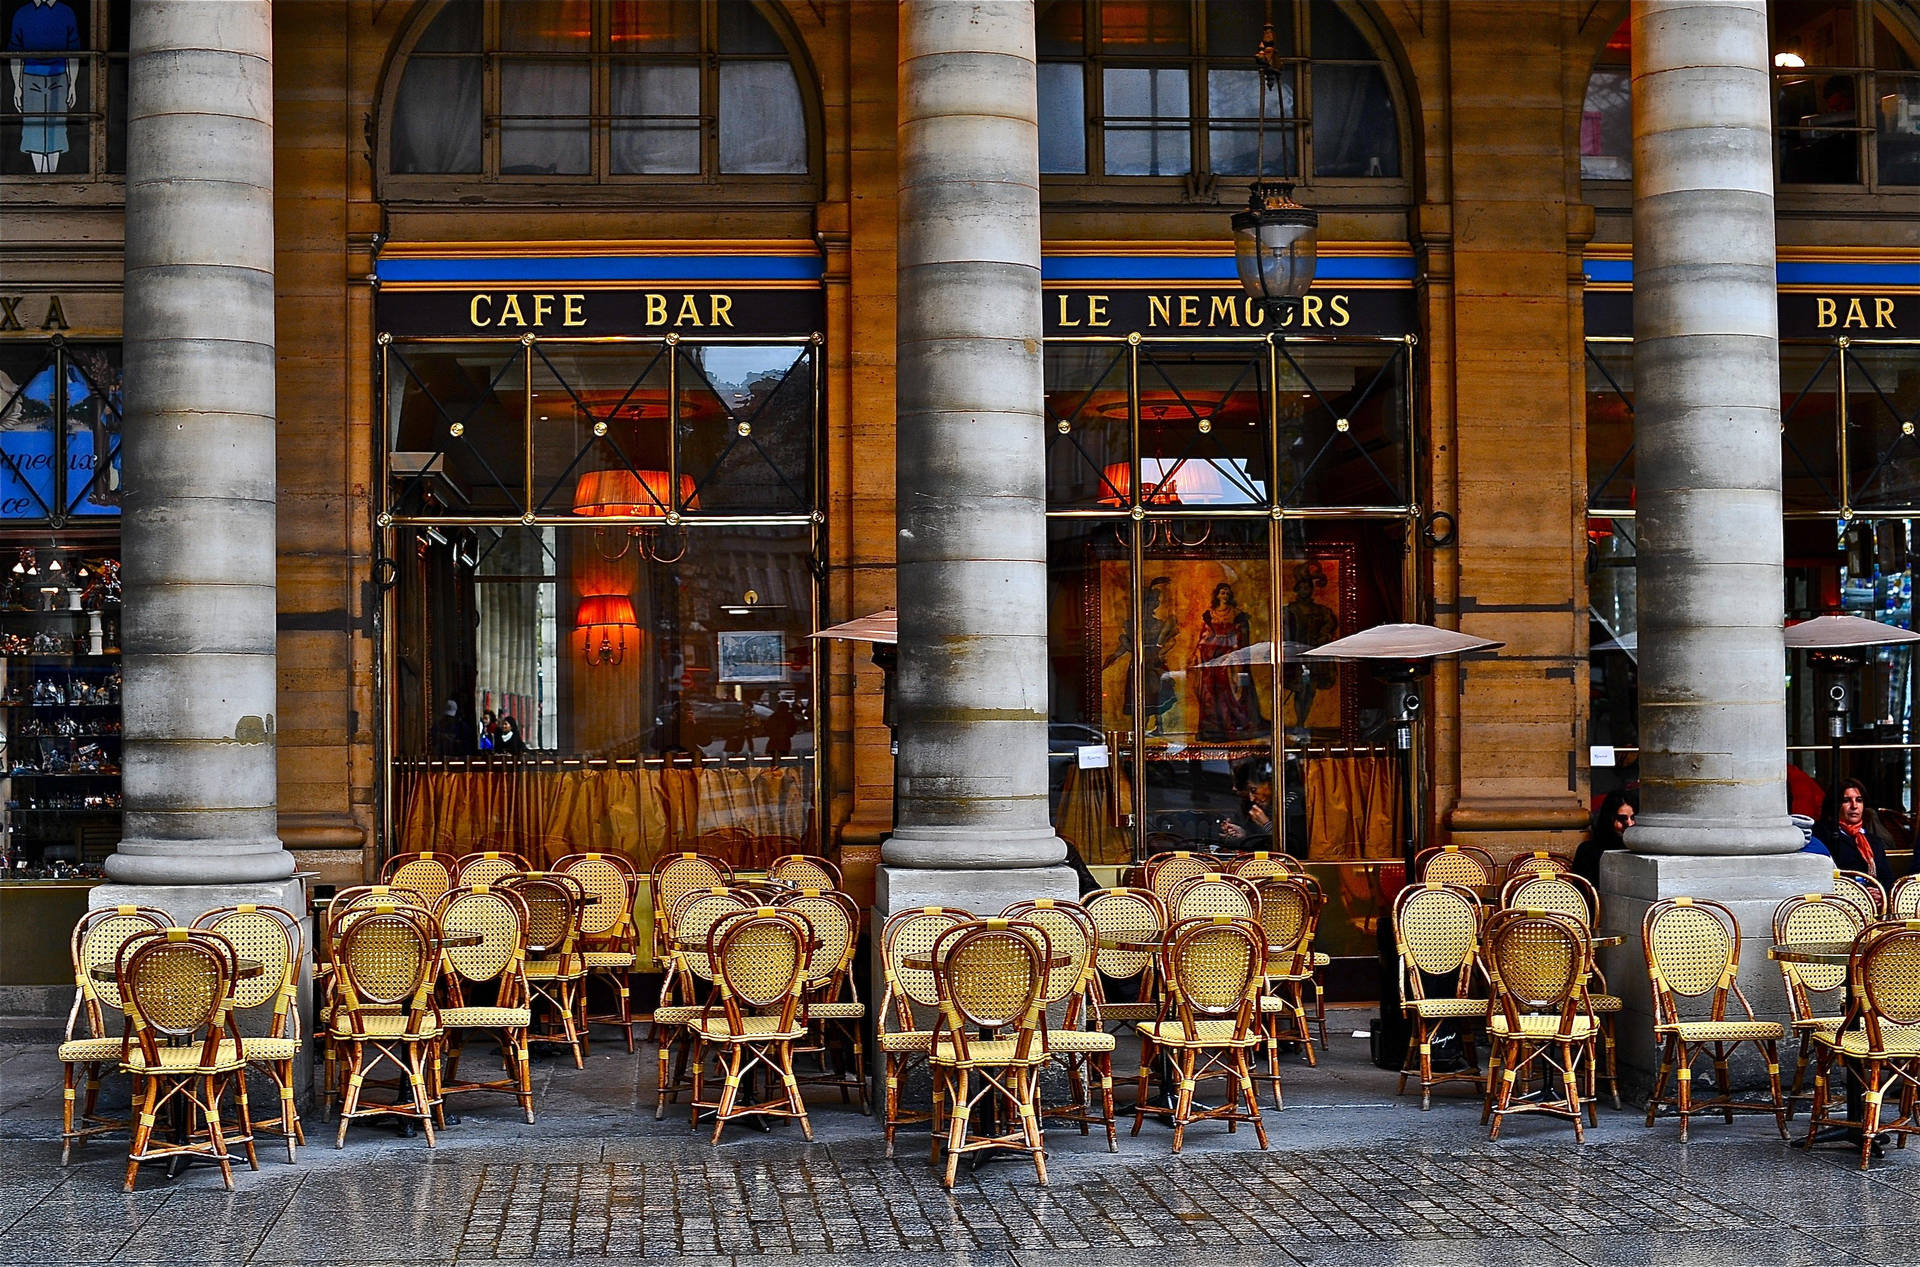 Le Nemours Cafe Bar In Paris